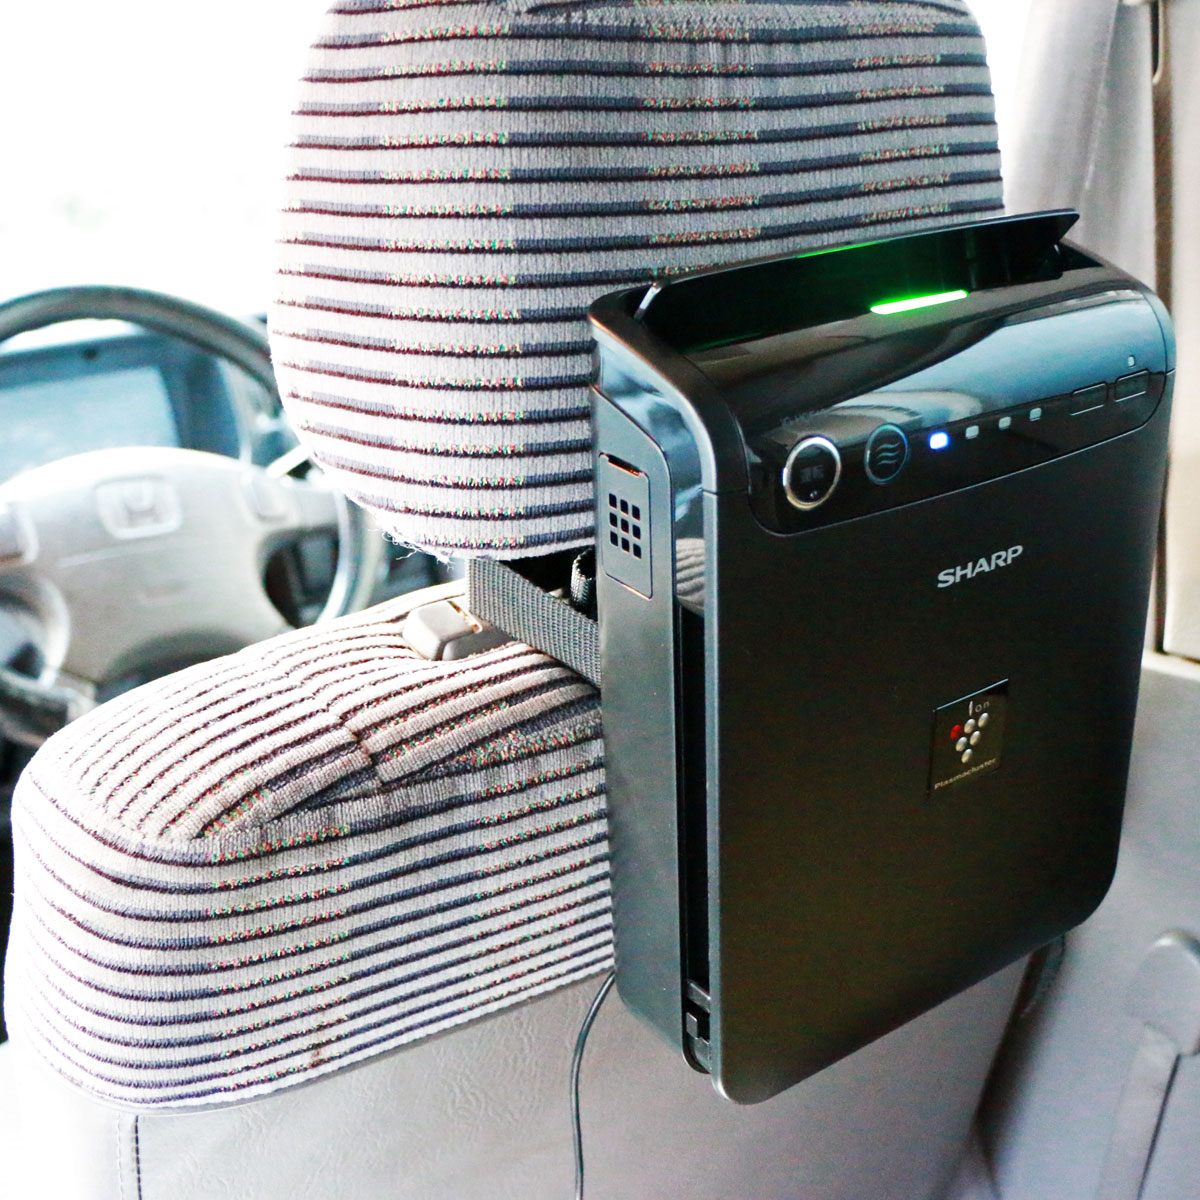 運転中の集中度アップ プラズマクラスターnextを搭載した車載用プラズマクラスターイオン発生機 価格 Comマガジン